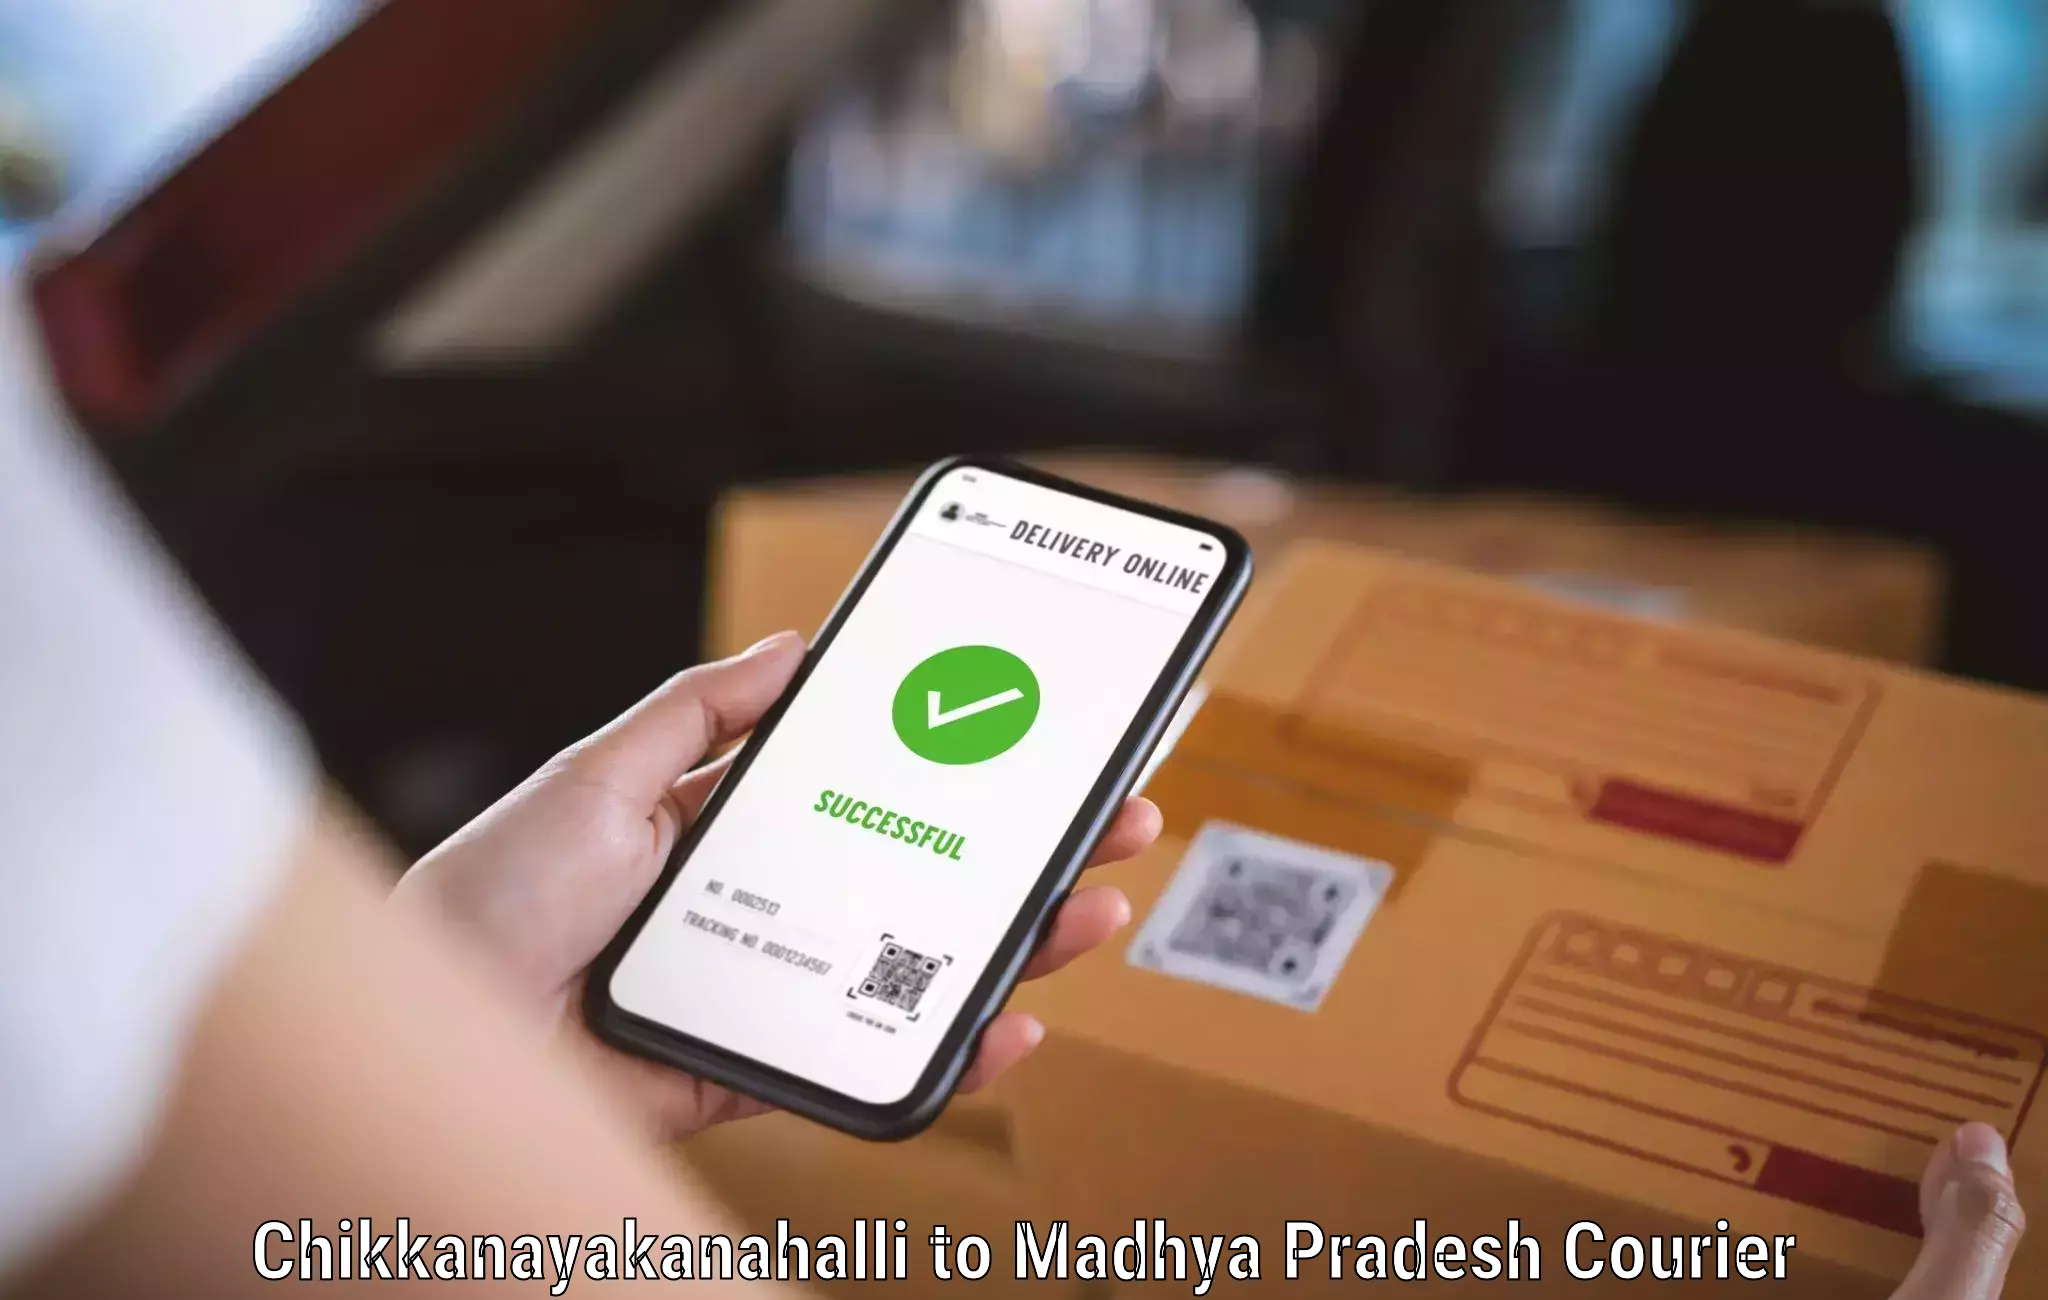 High-capacity courier solutions Chikkanayakanahalli to Mungaoli